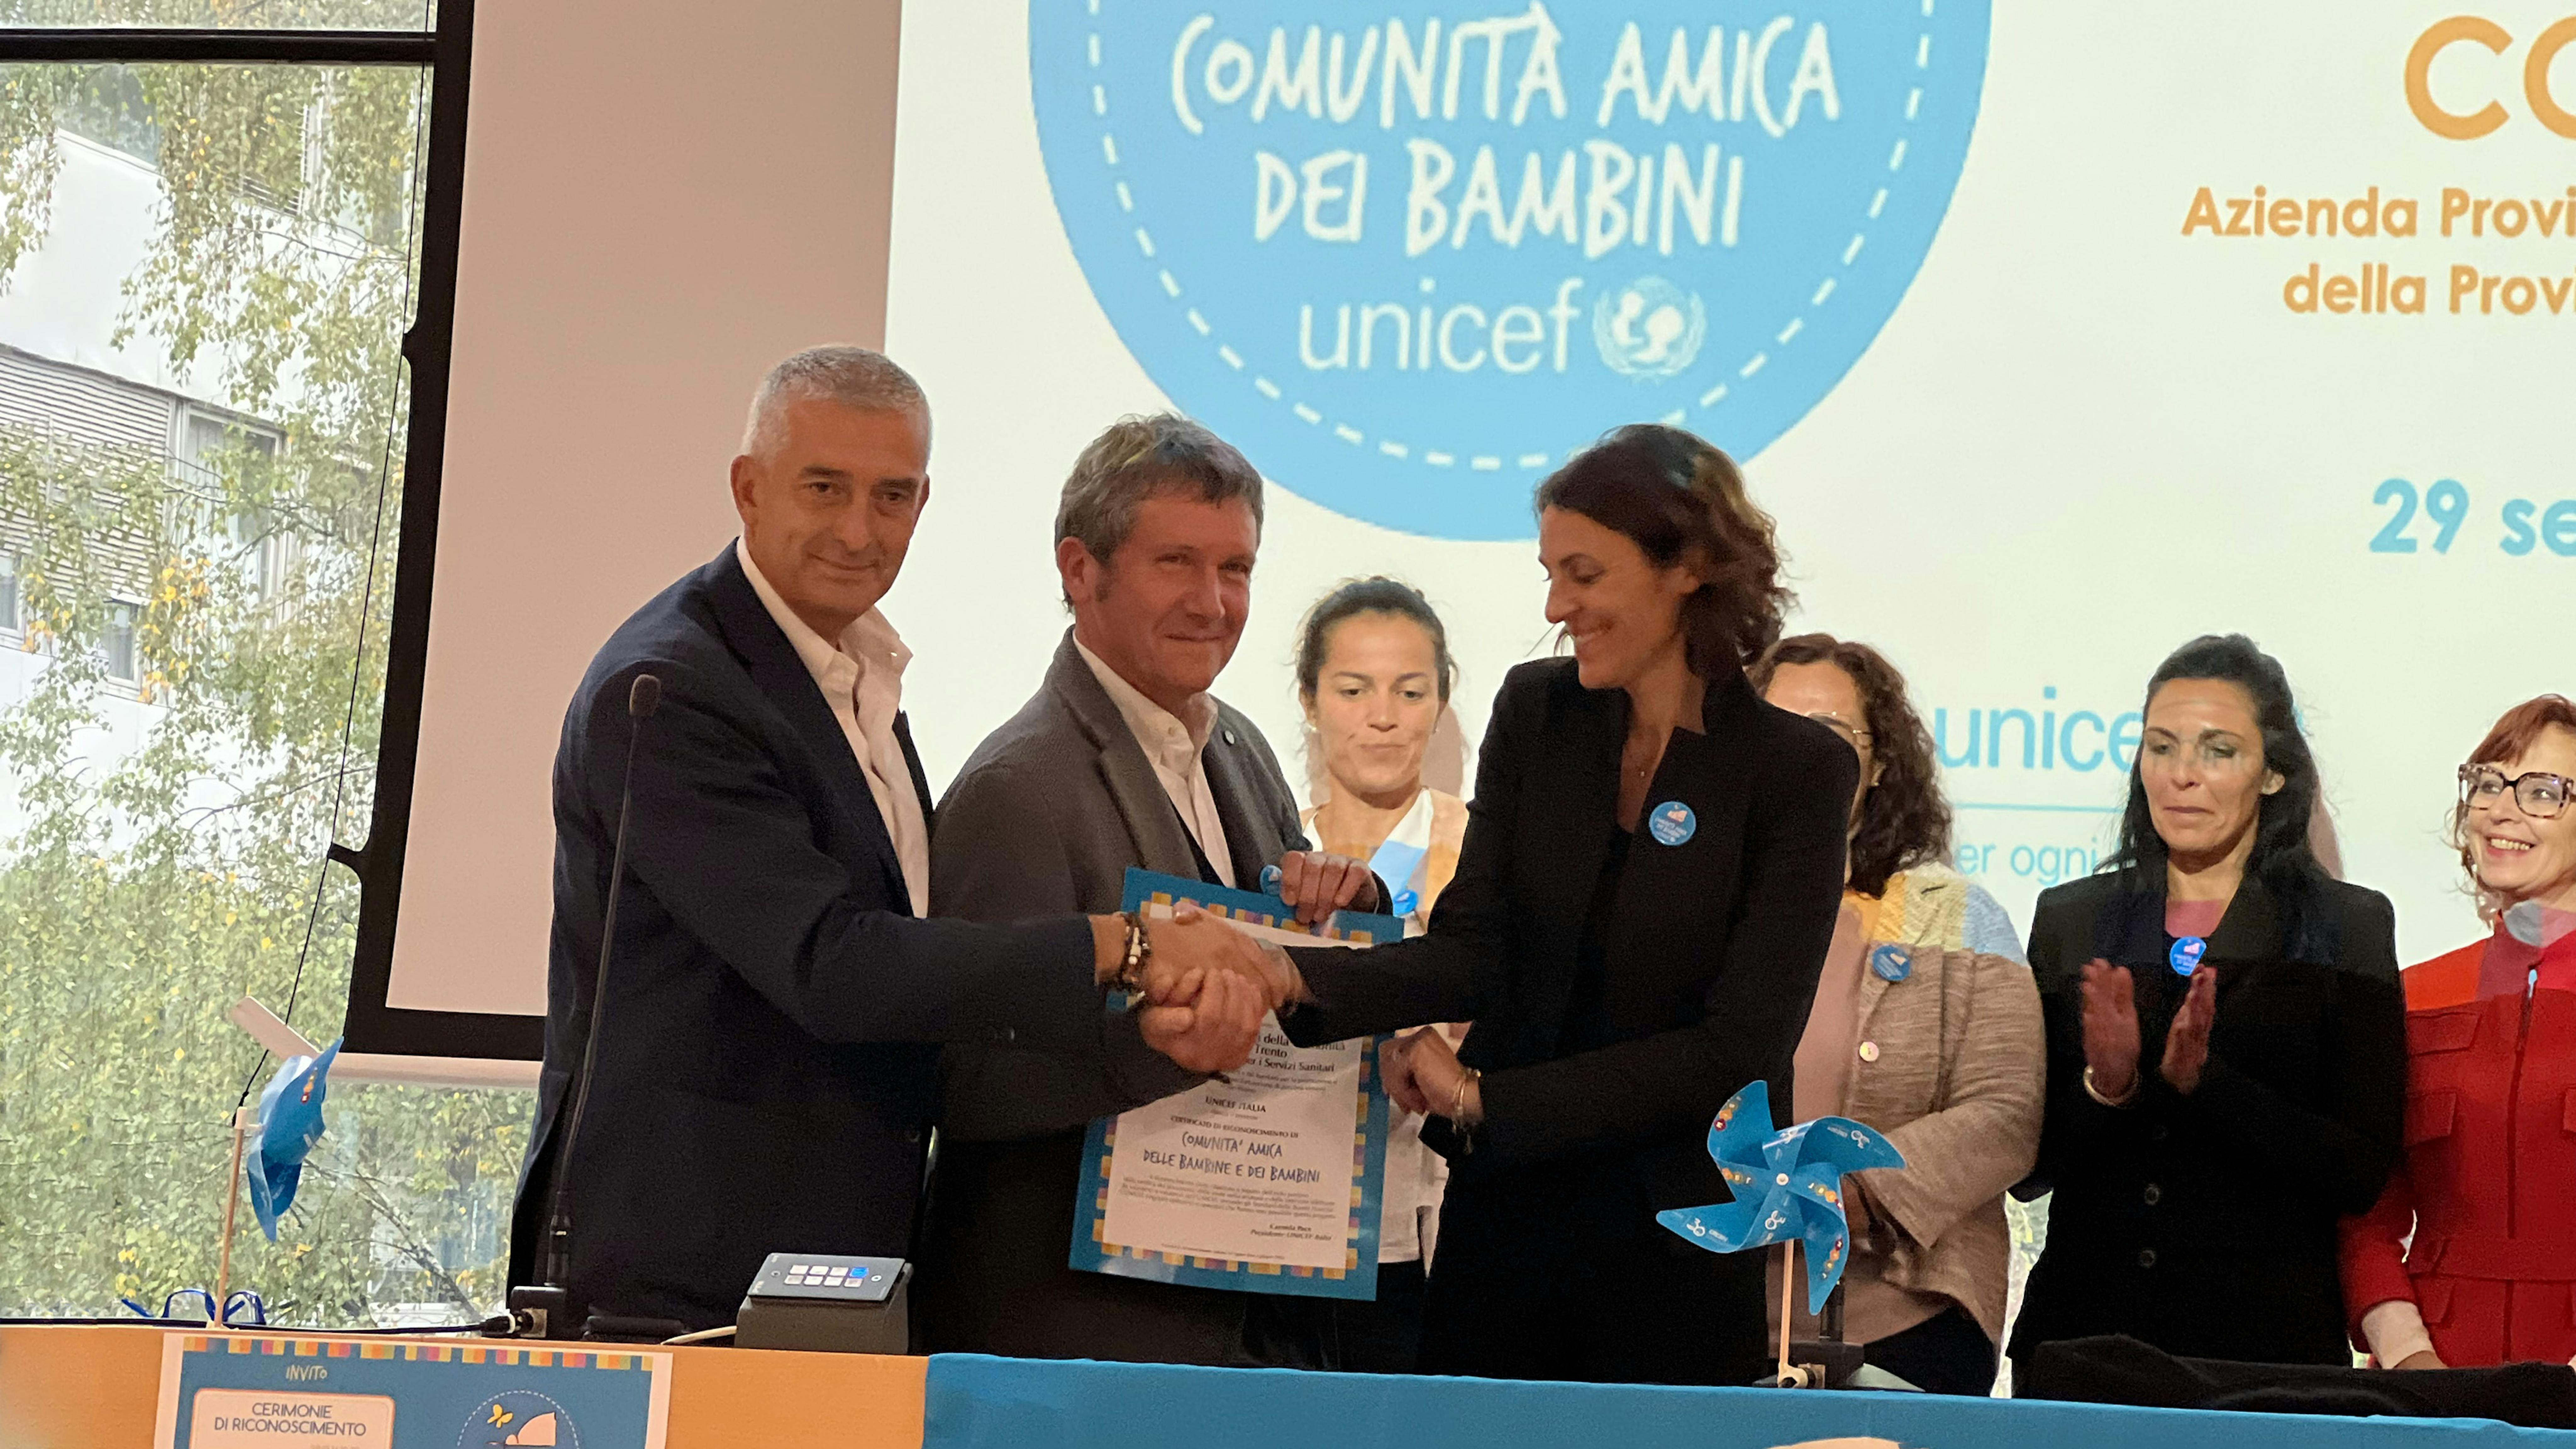 Paolo Rozera, DG UNICEF Italia, consegna la pergamena ai consultori